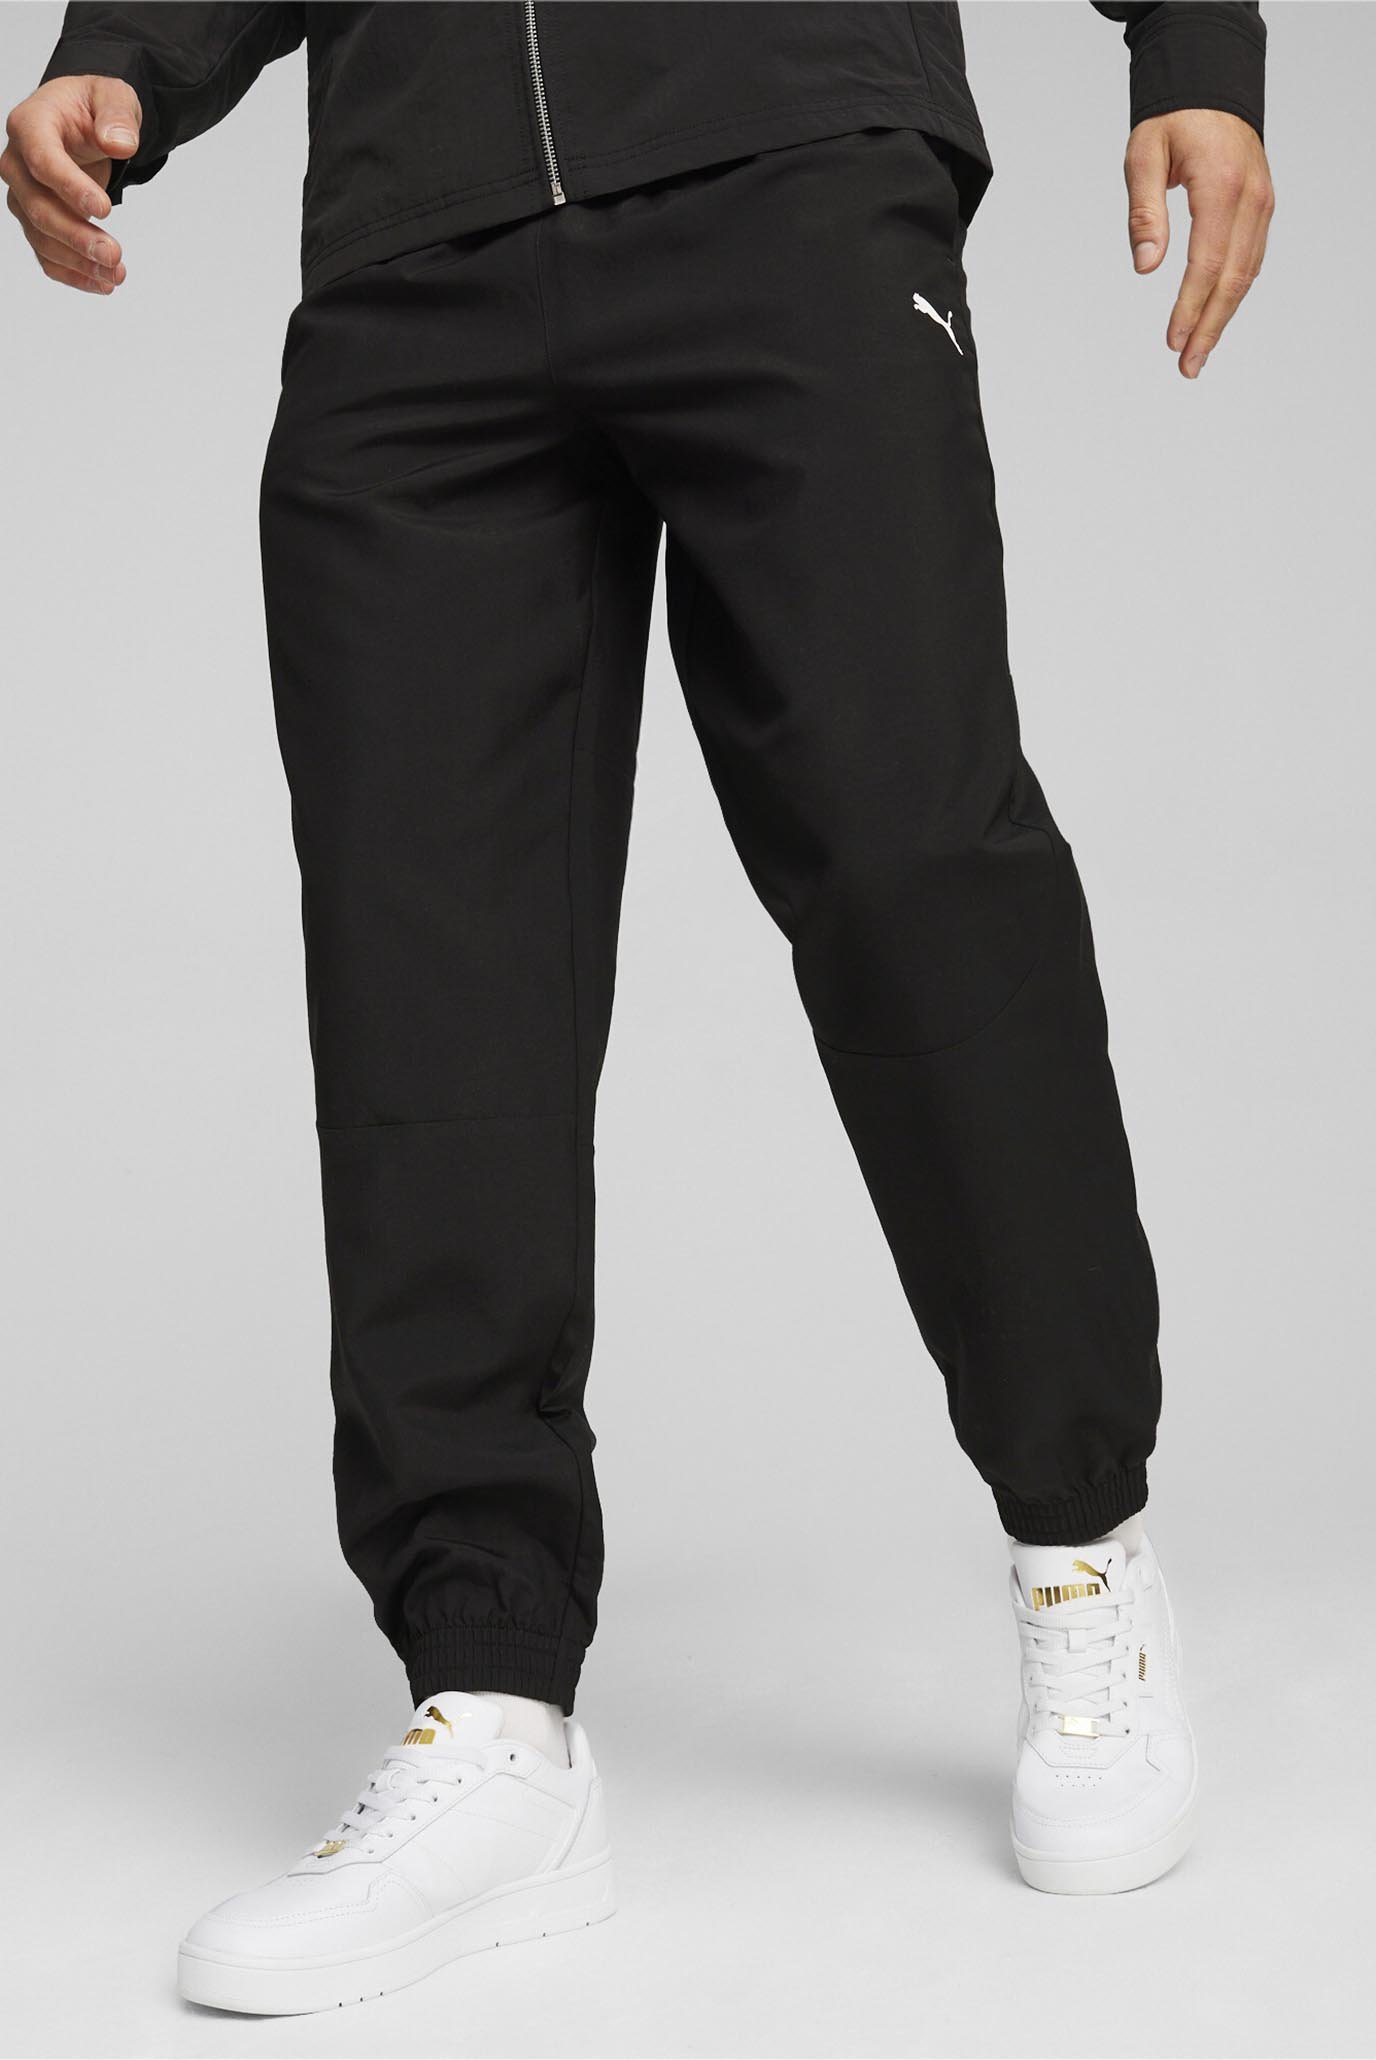 Чоловічі чорні штани RAD/CAL Men's Woven Pants 1